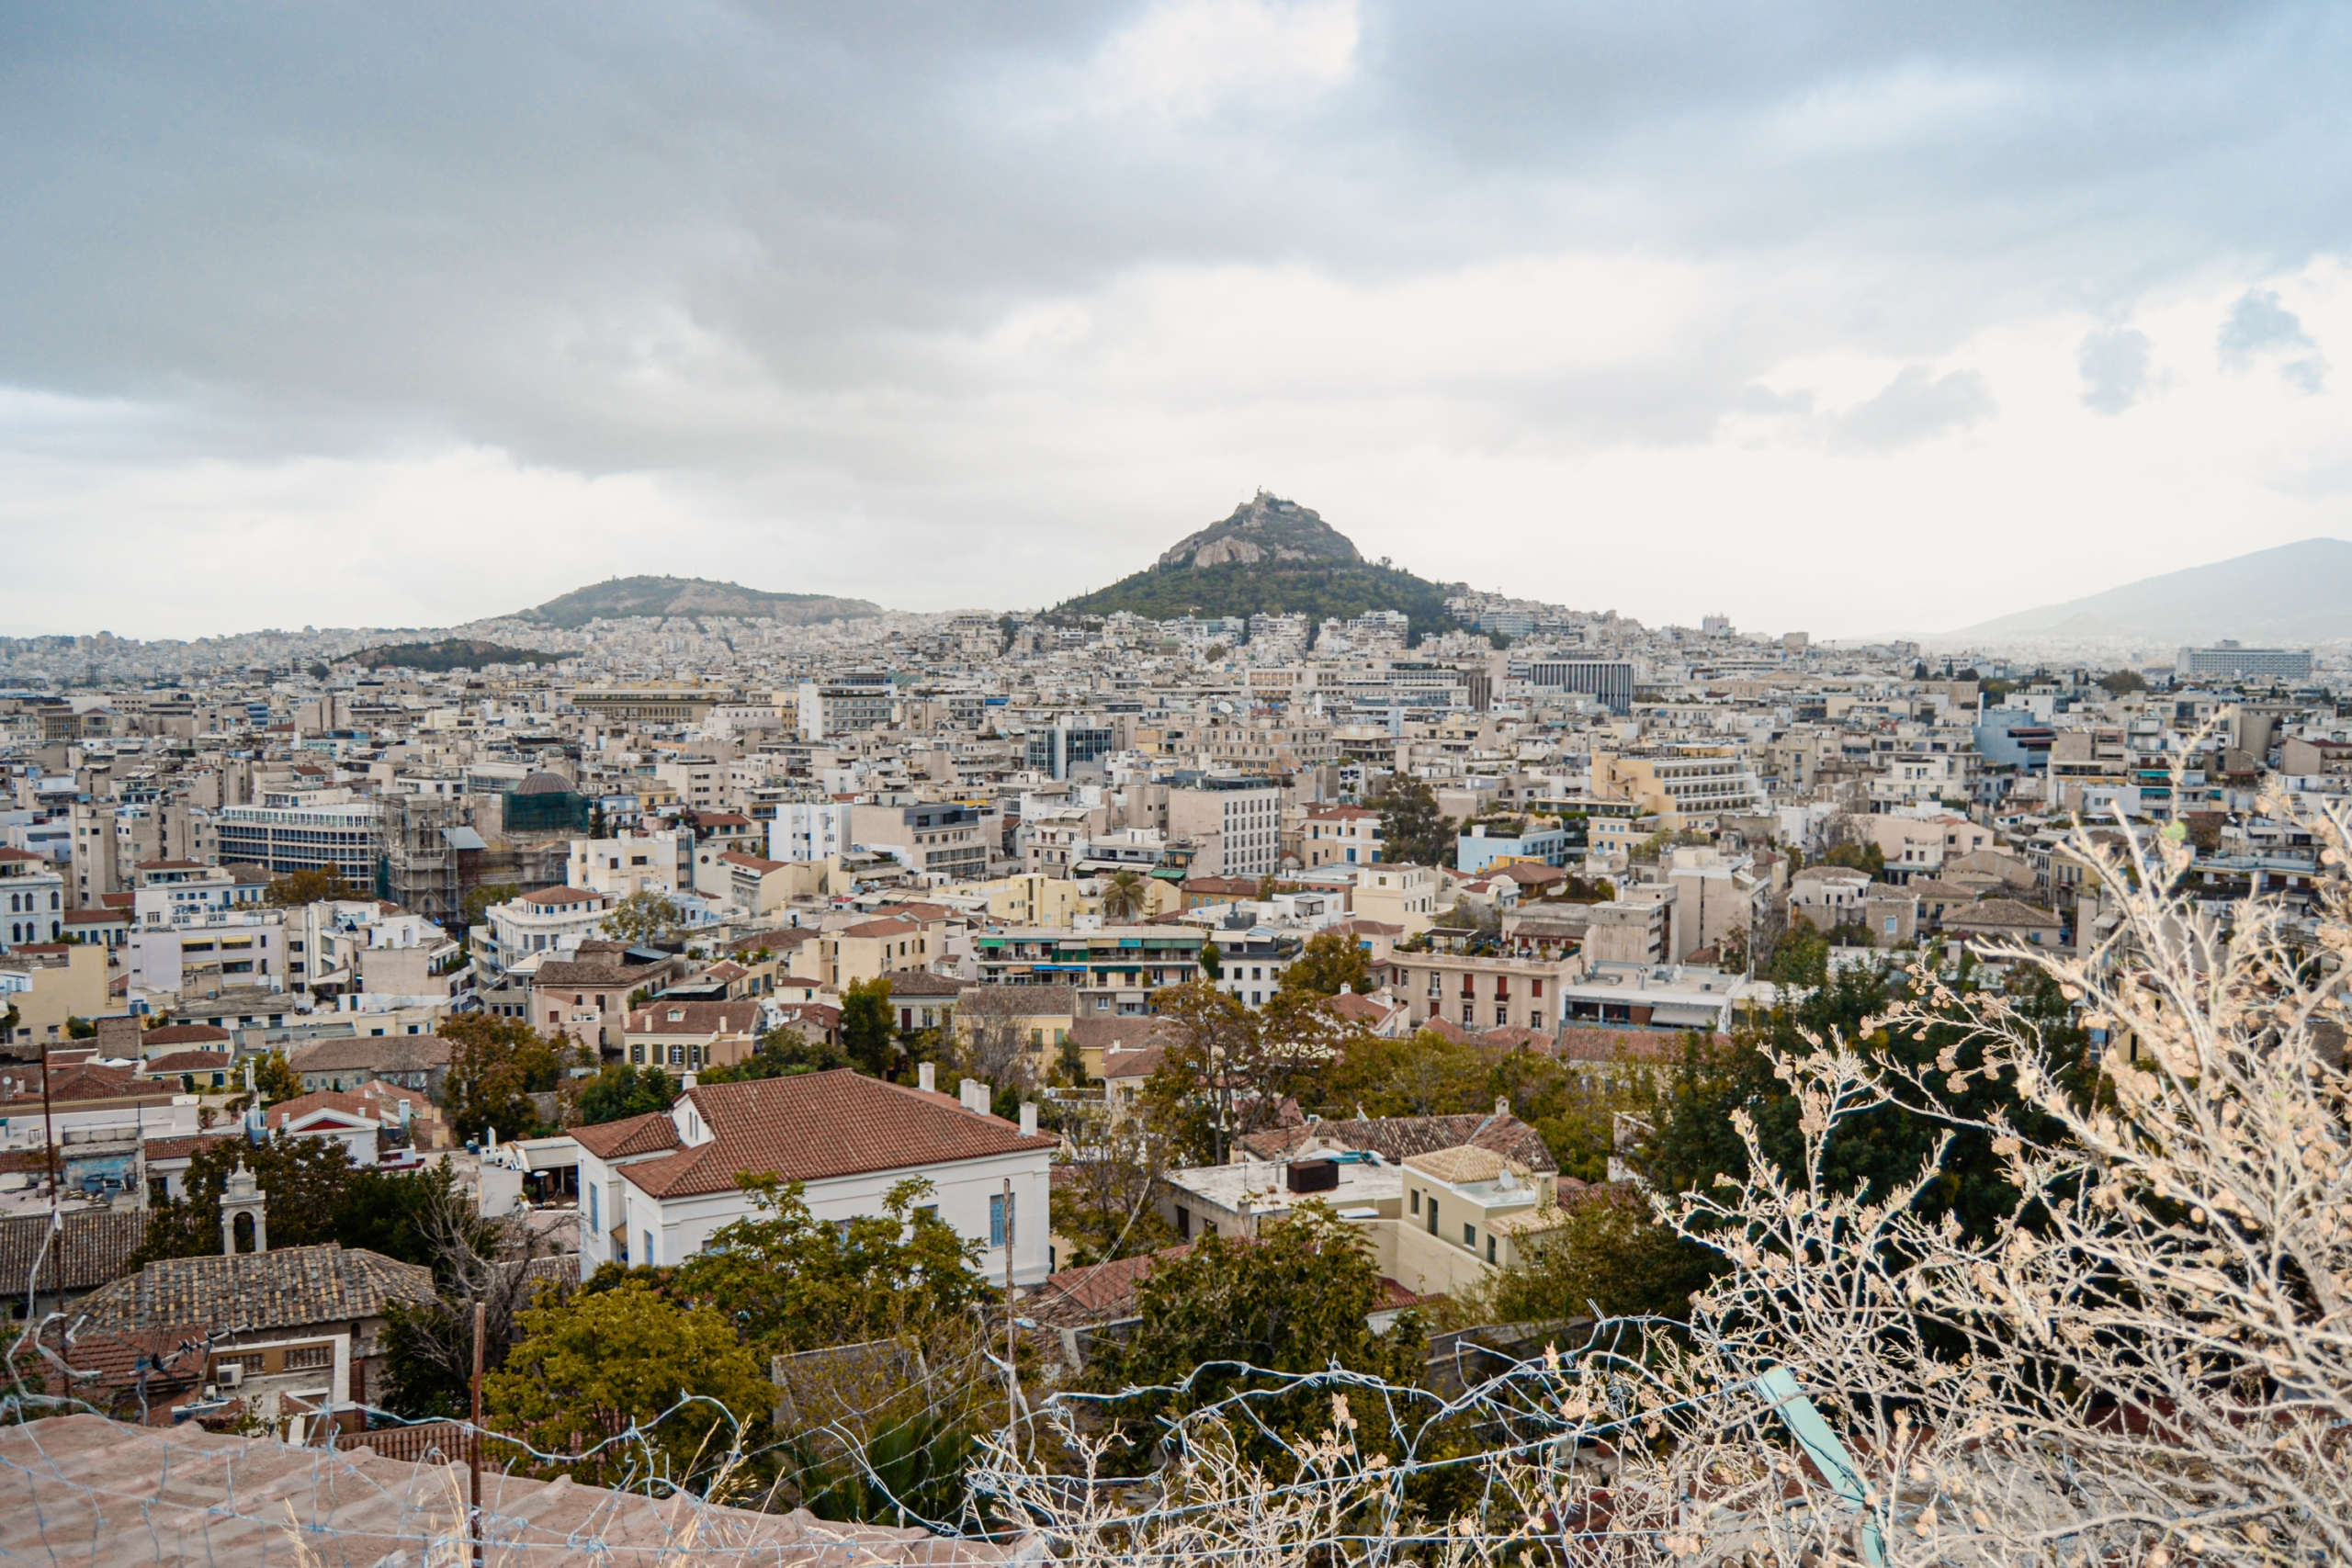 Skyline von Athen, Blick über Häuser und einen Berg i Hintergrund.